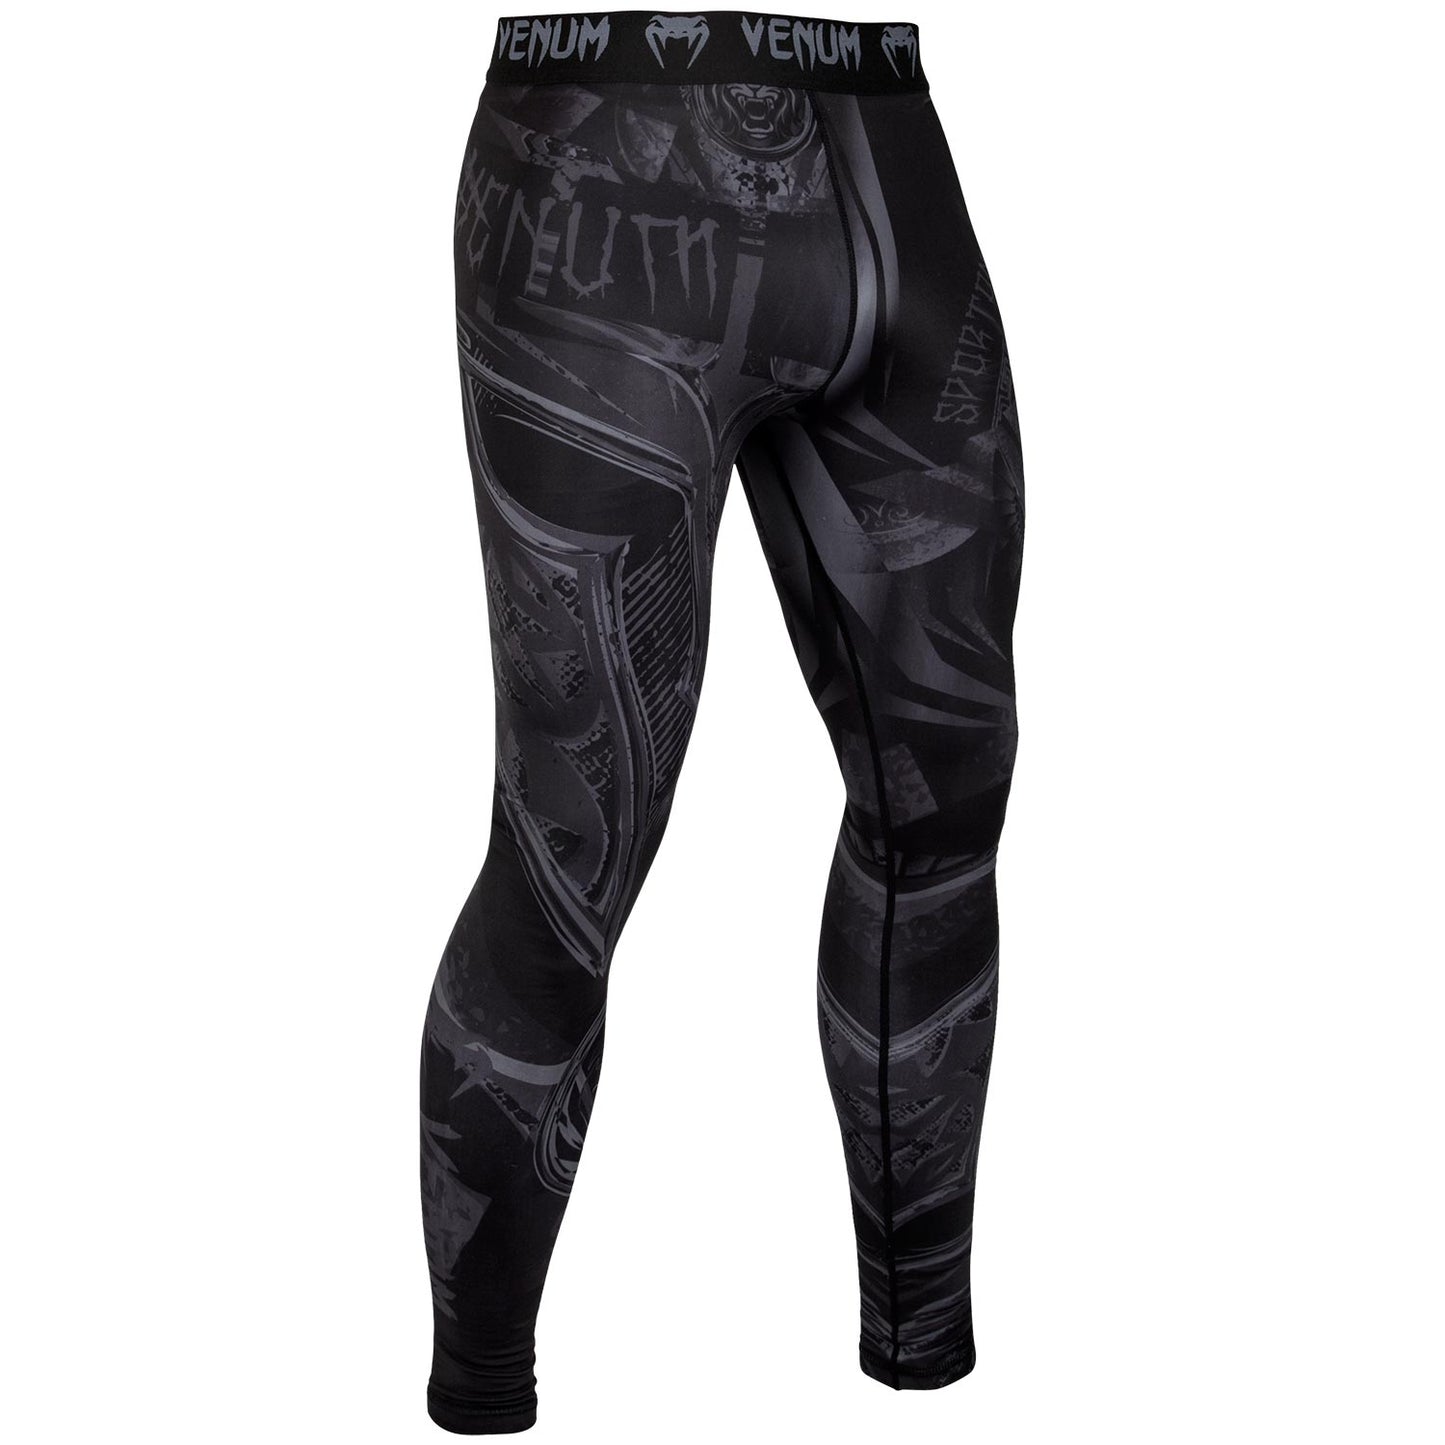 Pantalones de compresión Venum Gladiator 3.0 - Negro/Negro